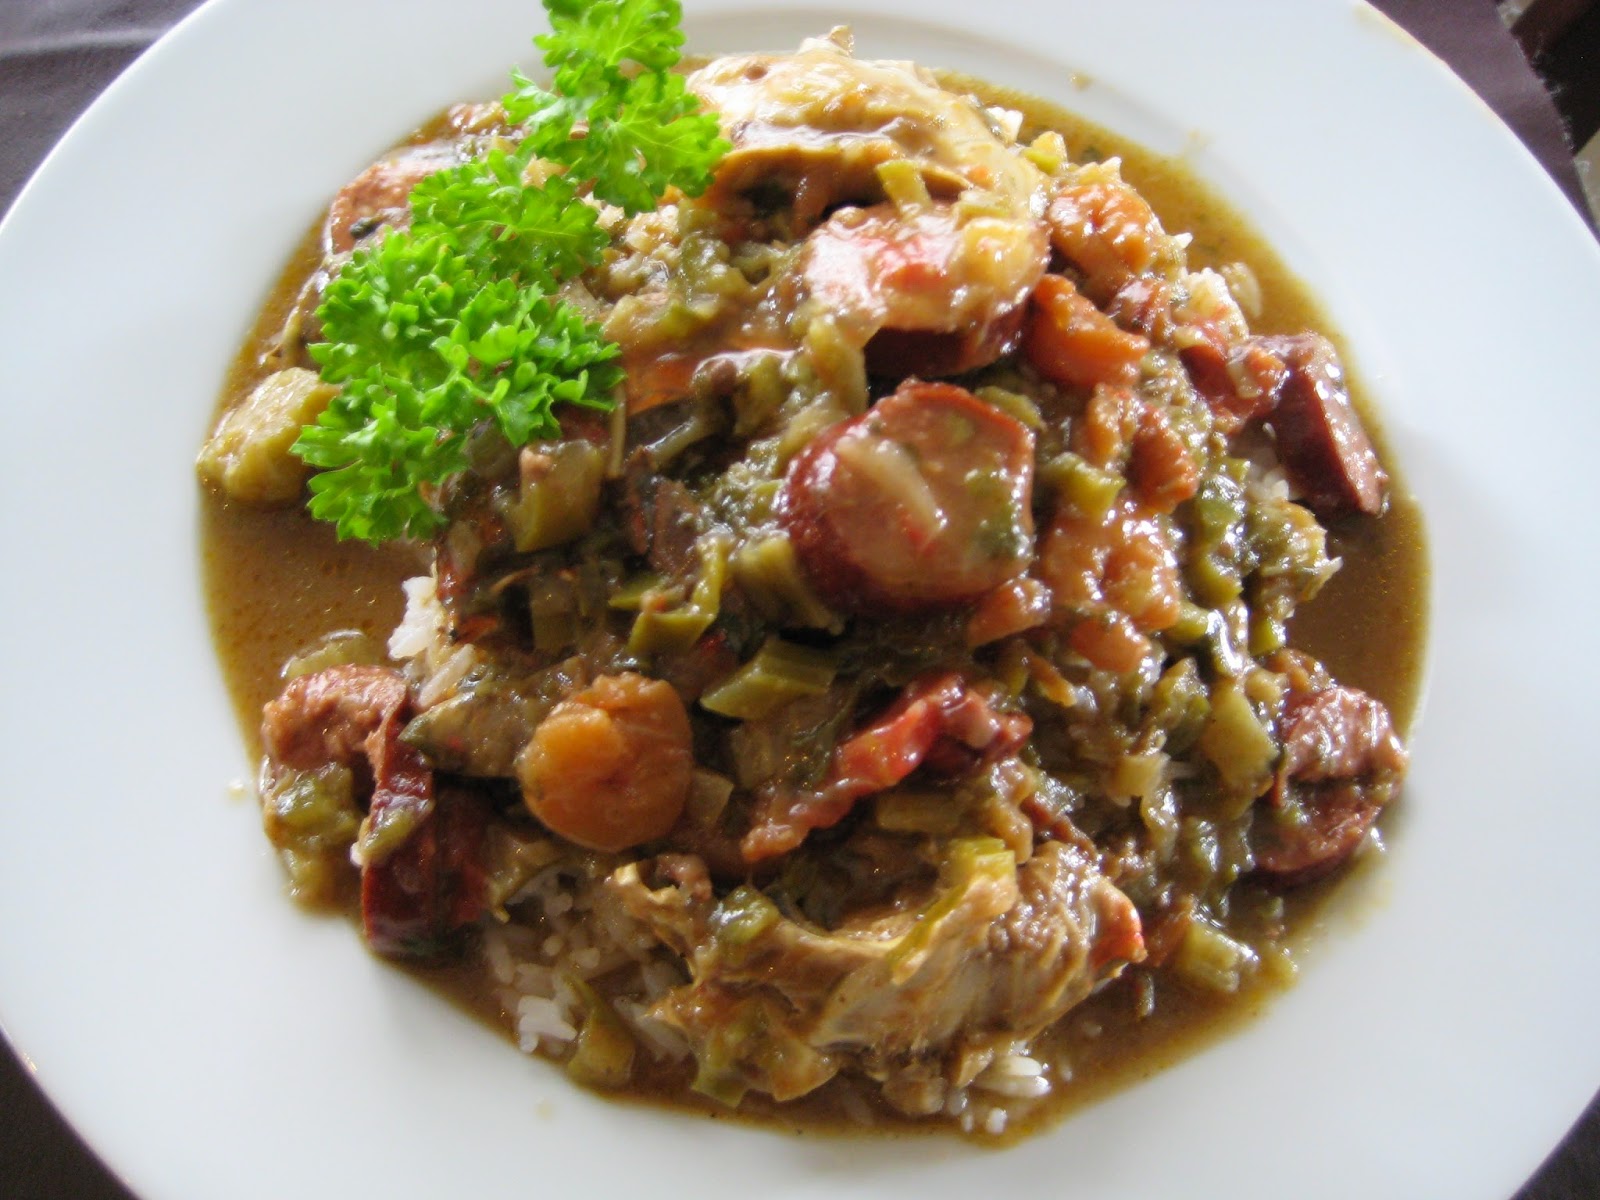 Súp Gumbo hải sản là món ăn truyền thống nổi tiếng của nước Mỹ